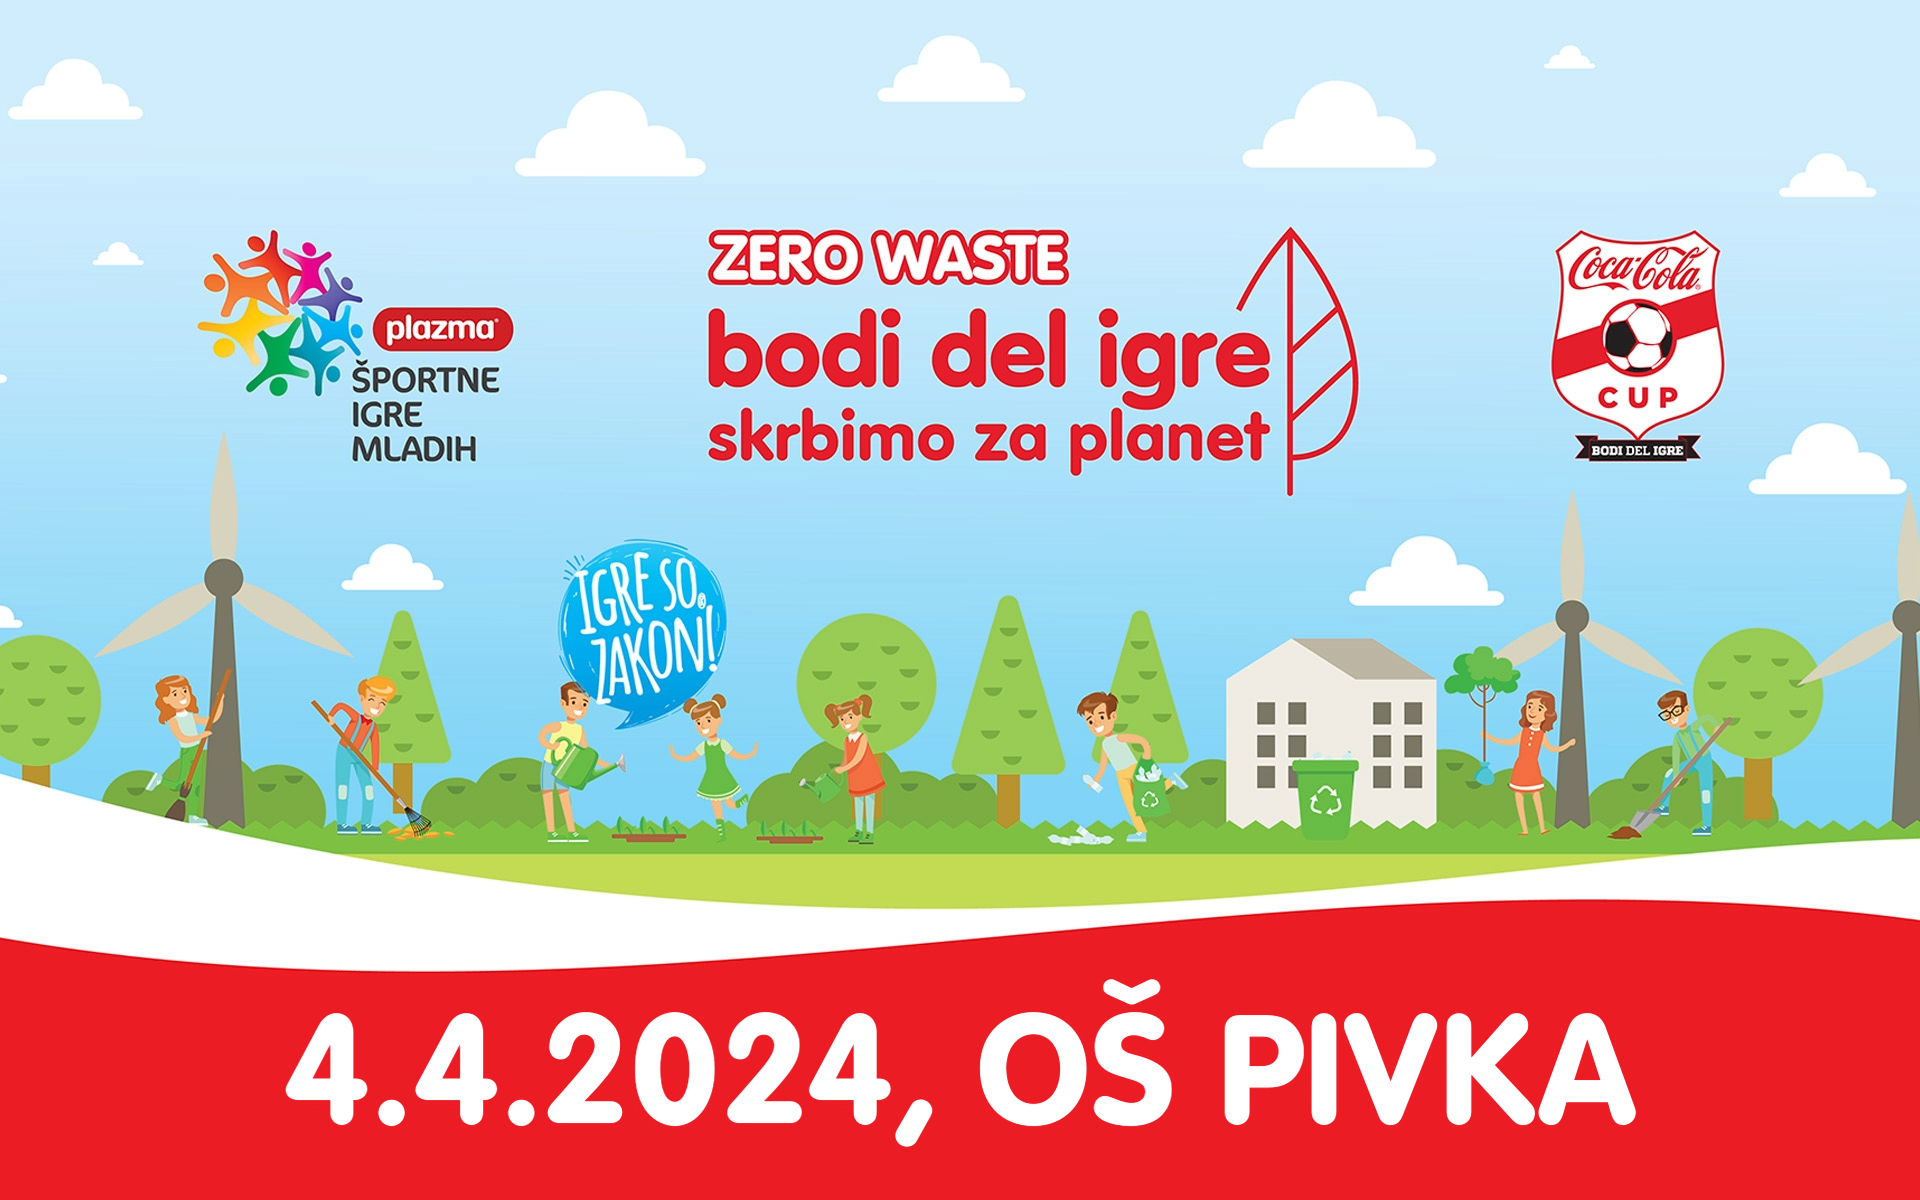 Prvi Coca-Cola – Bodi del igre – Skrbimo za planet Dogodek v Sloveniji je potekal v Pivki